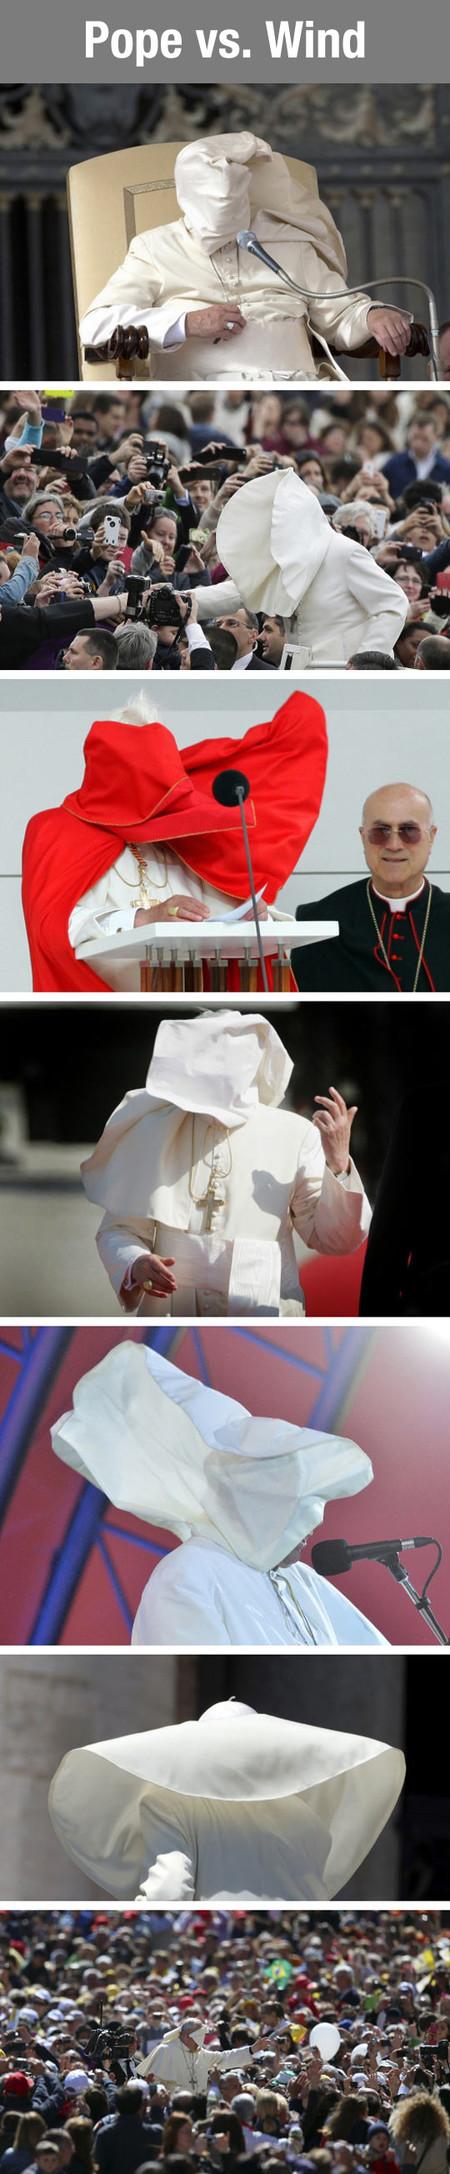 Pope Versus Wind